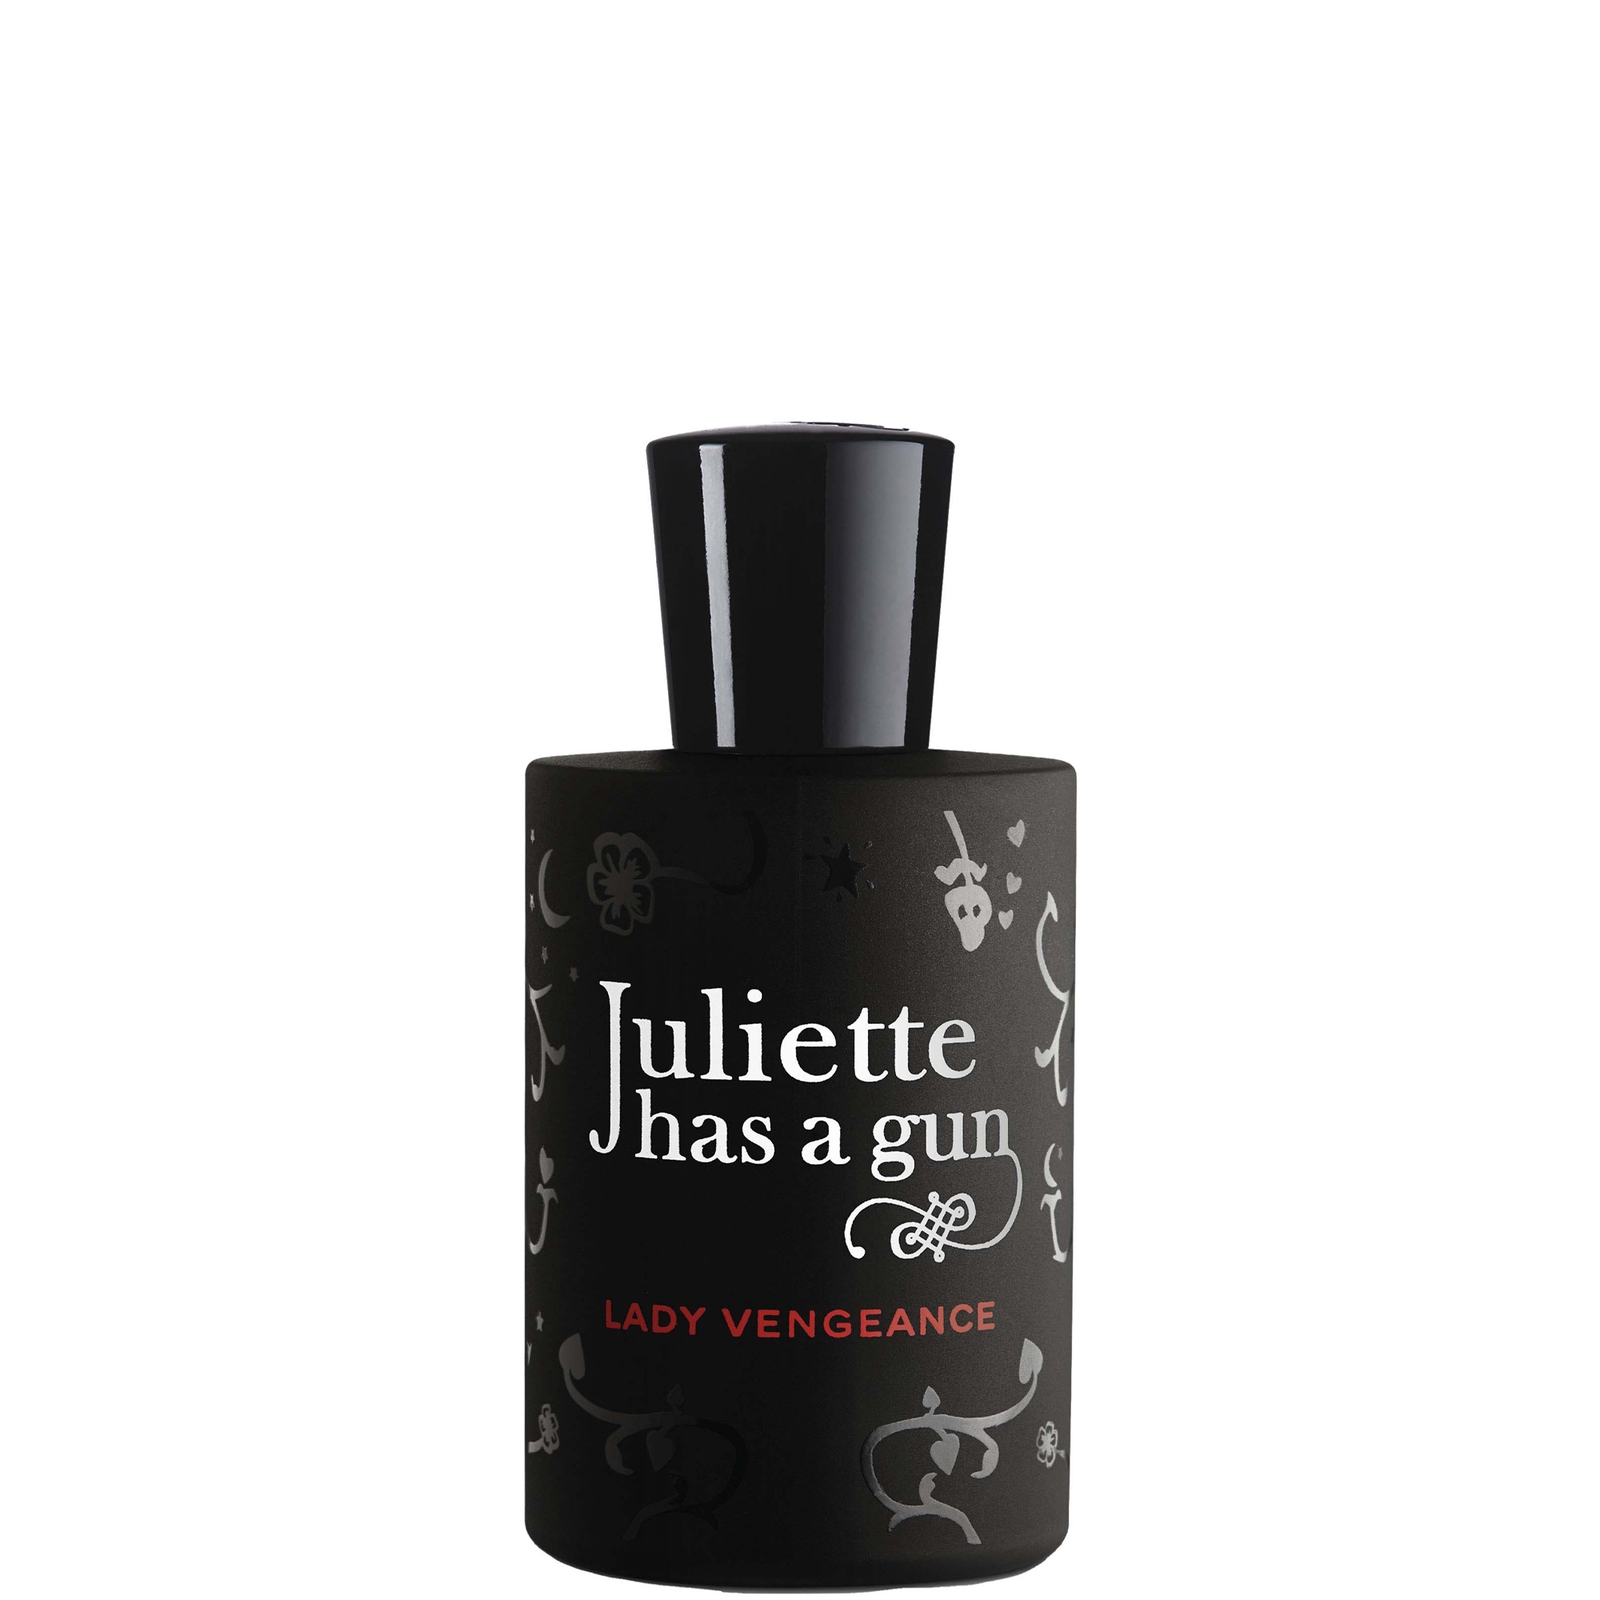 Photos - Women's Fragrance Juliette Has a Gun Lady Vengeance Eau de Parfum 50ml JLV-050 